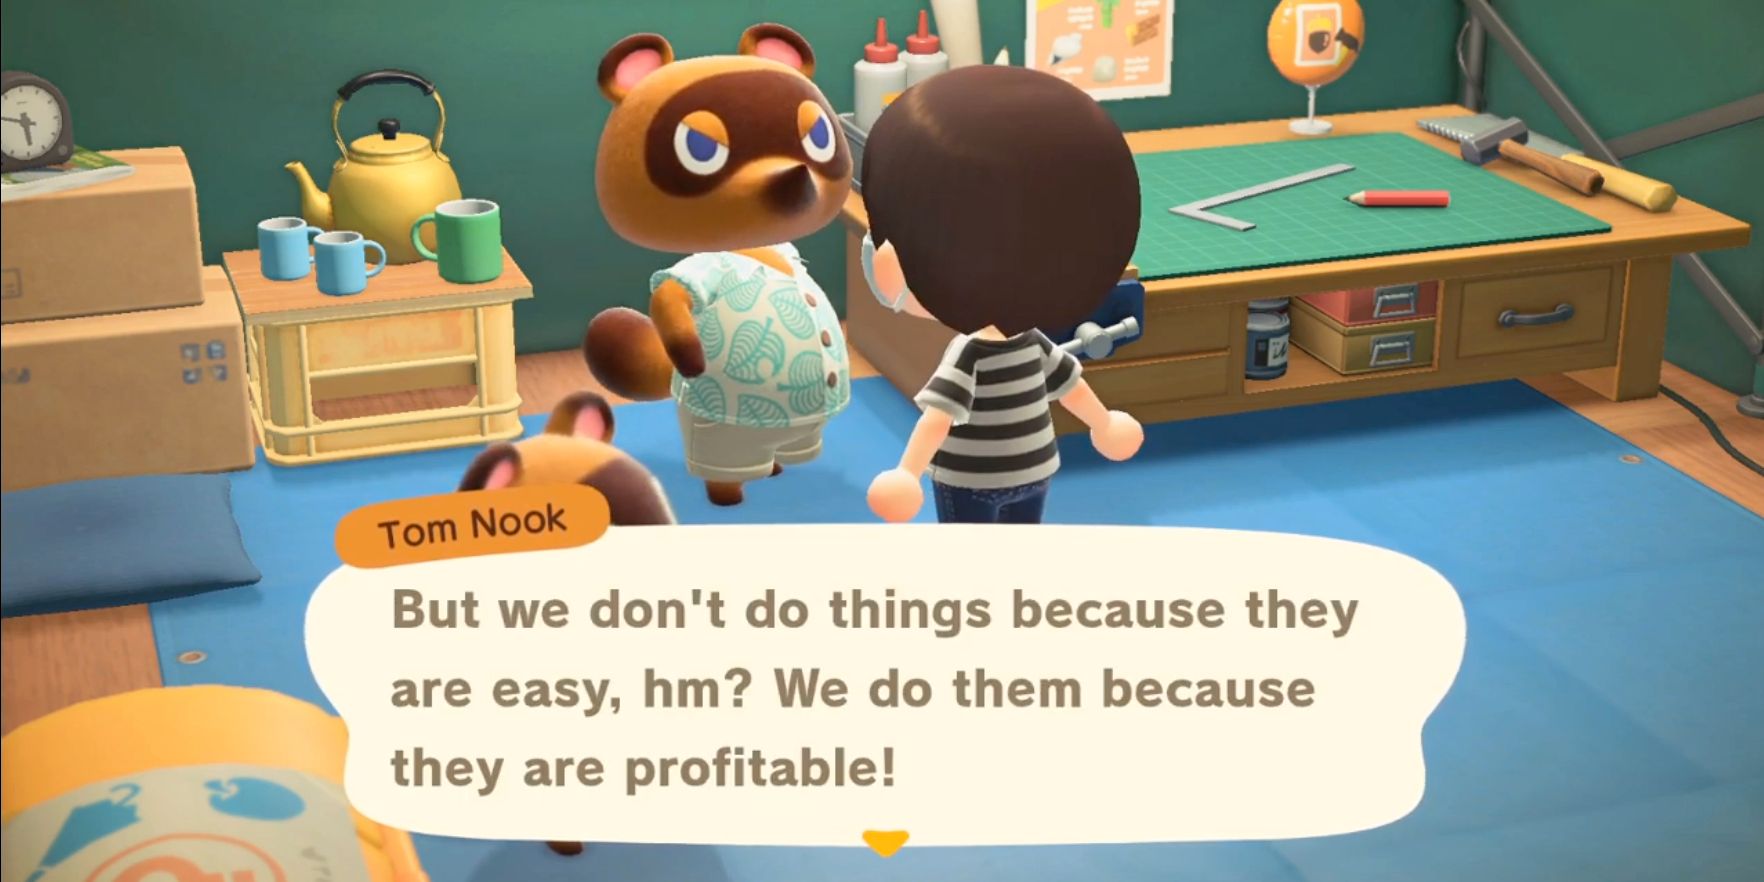 Animal Crossing Fan determina los costos de vivienda en USD